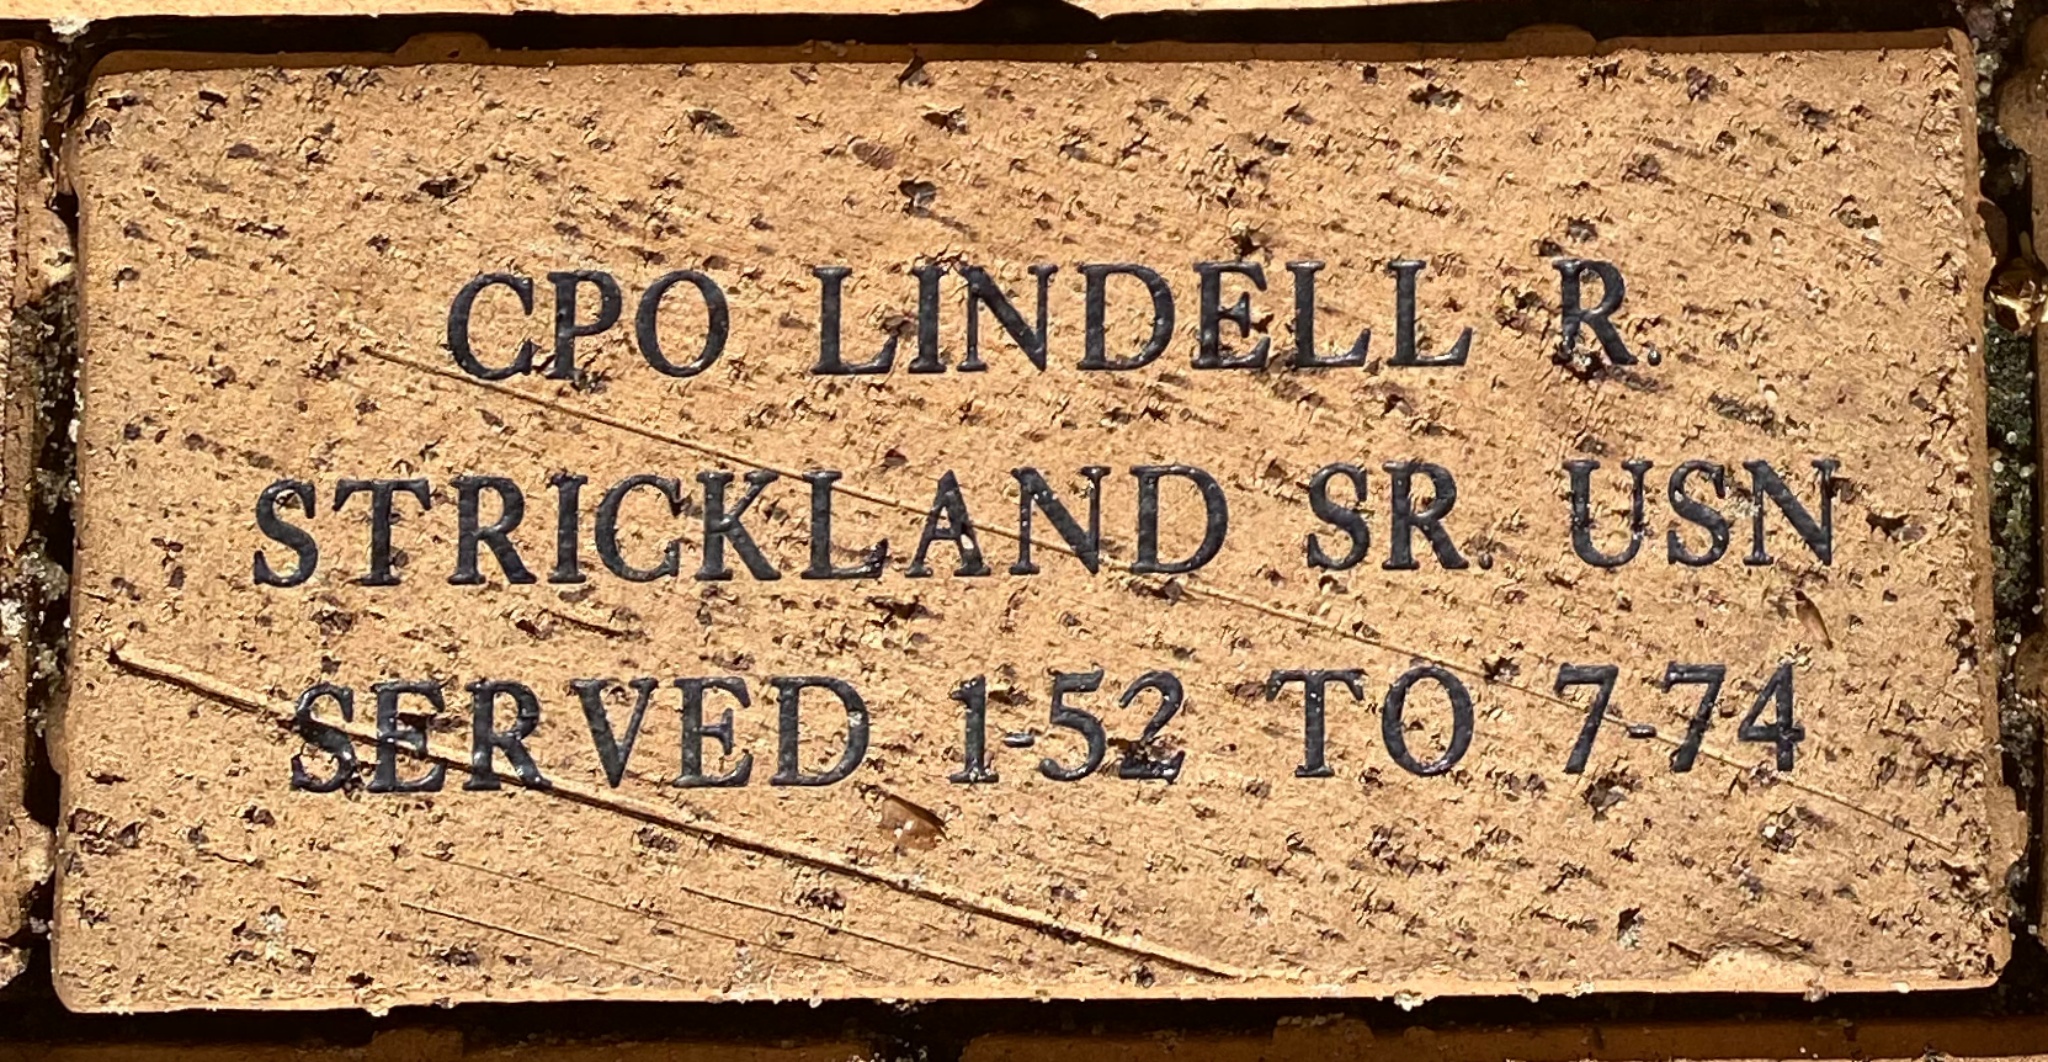 CPO LINDELL R. STRICKLAND SR. USN SERVED 1-52 TO 7-74